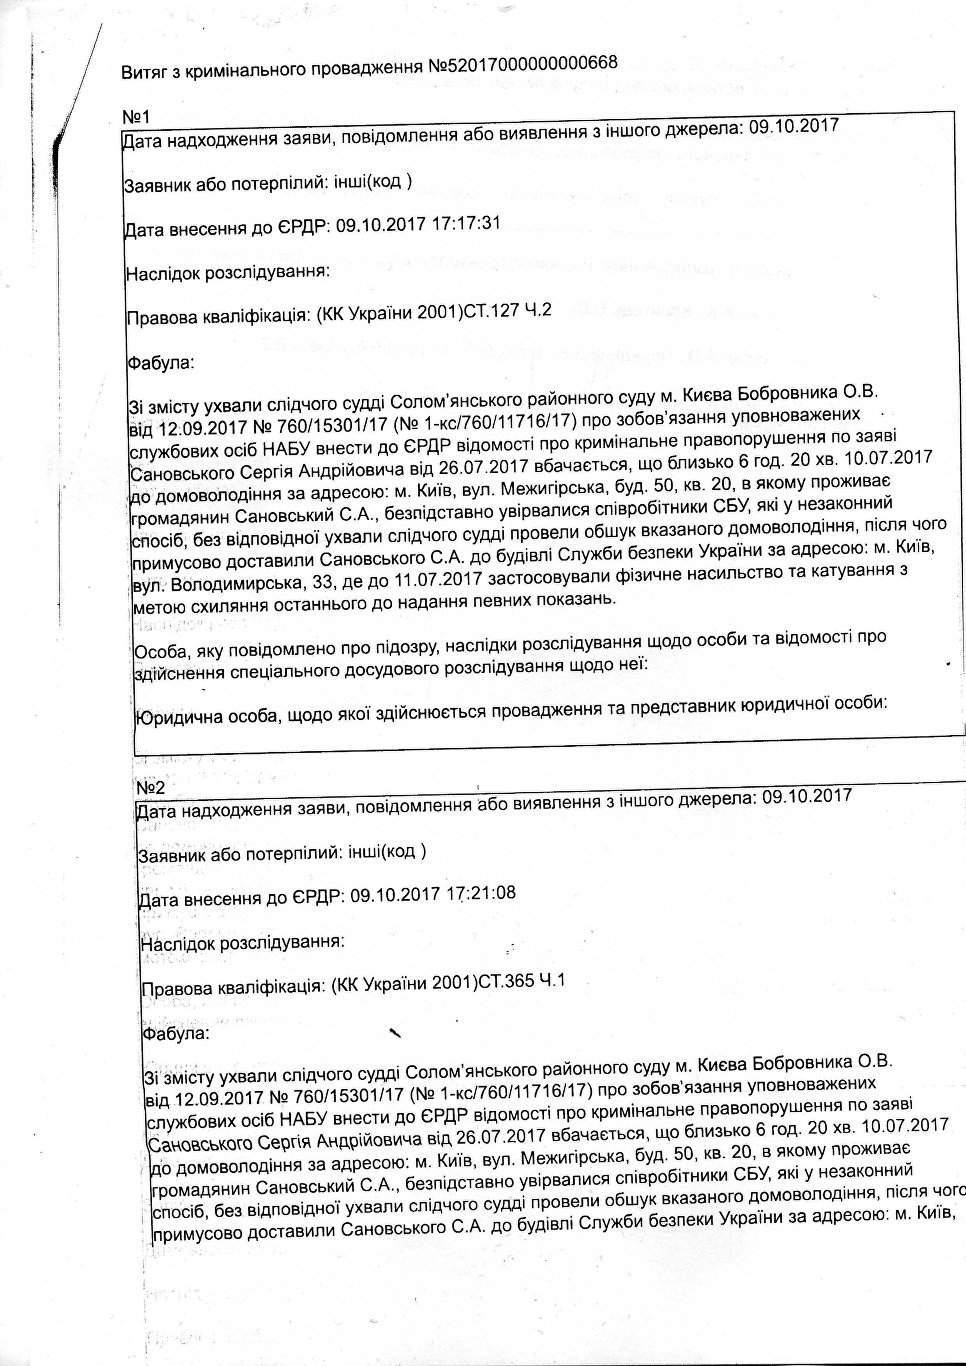 Выписка из криминального реестра о том, что начато расследование по заявлению Сергея Сановского.